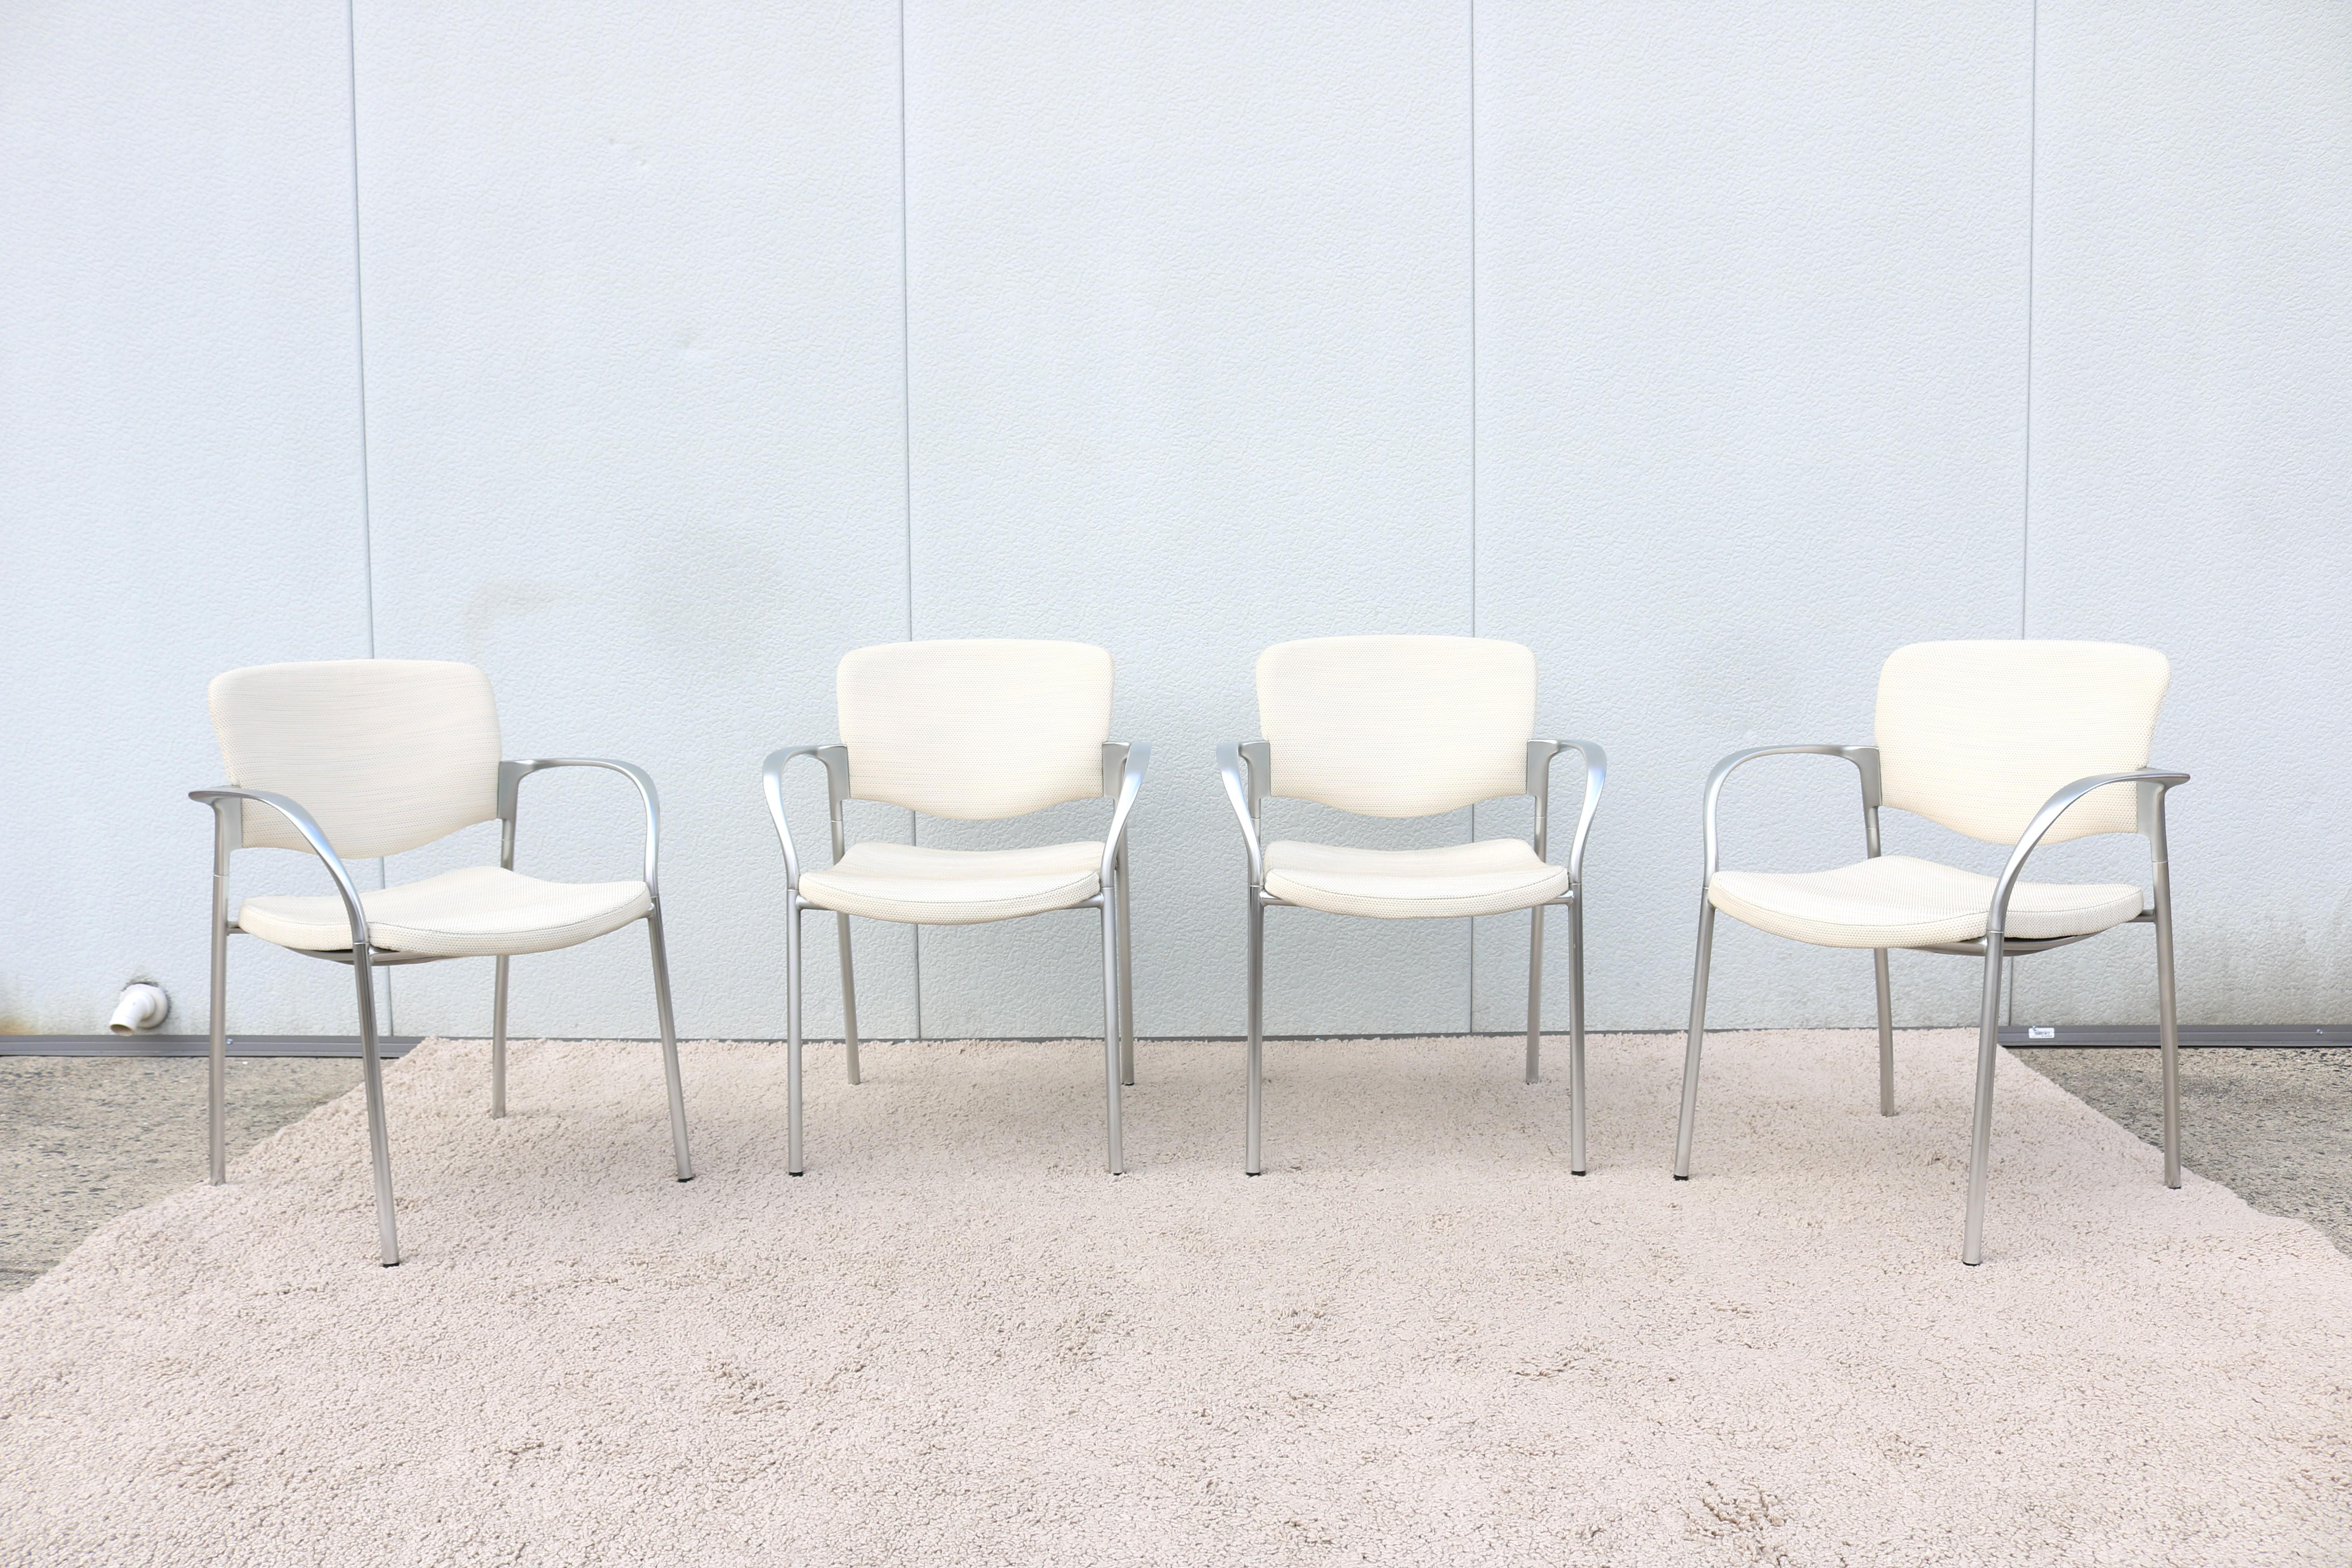 Der stapelbare Stuhl Welcome von Stylex ist sehr schlank und hat einen klaren, modernen Look. 
Durch sein geringes Gewicht und seine Stapelfähigkeit eignet er sich für die unterschiedlichsten Situationen und Bedürfnisse.
Ein schöner Mehrzweckstuhl